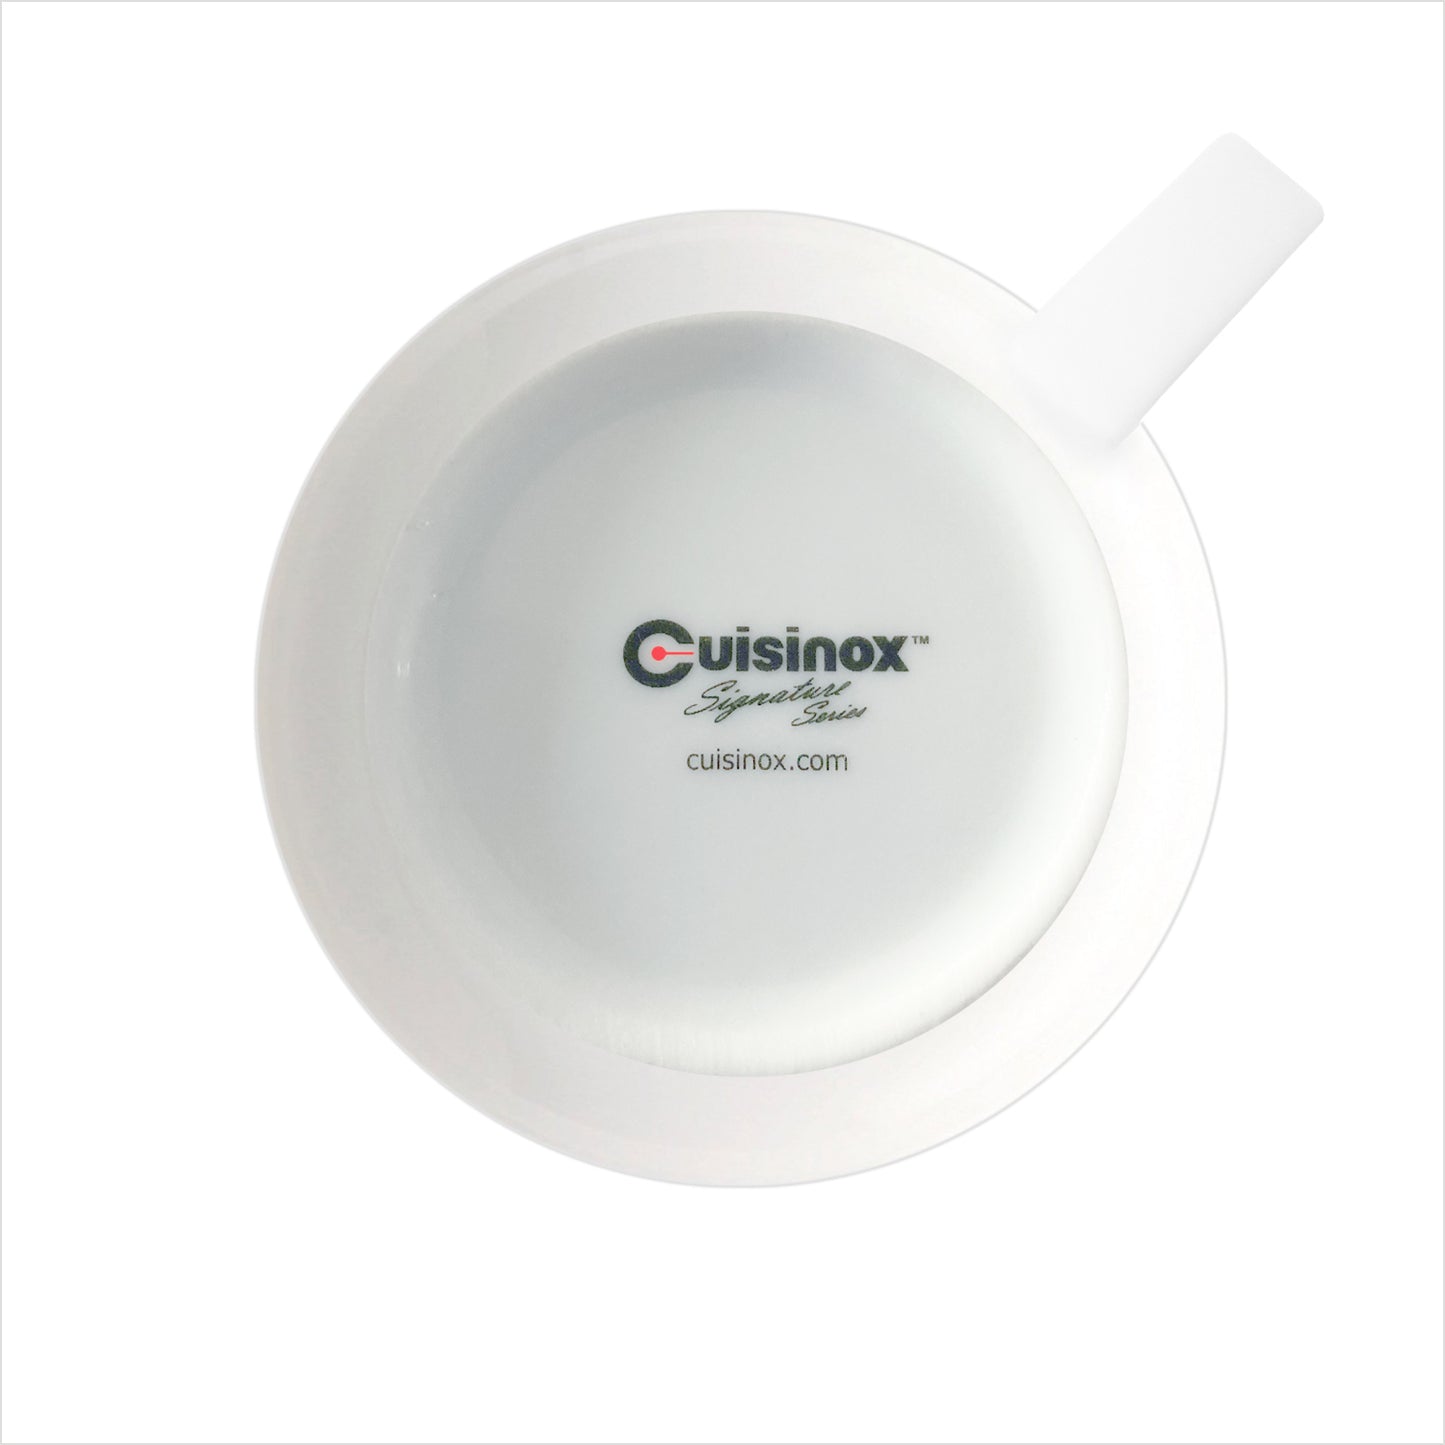 Cuisinox Signature Series, ensemble de 4 tasses à expresso, porcelaine blanche